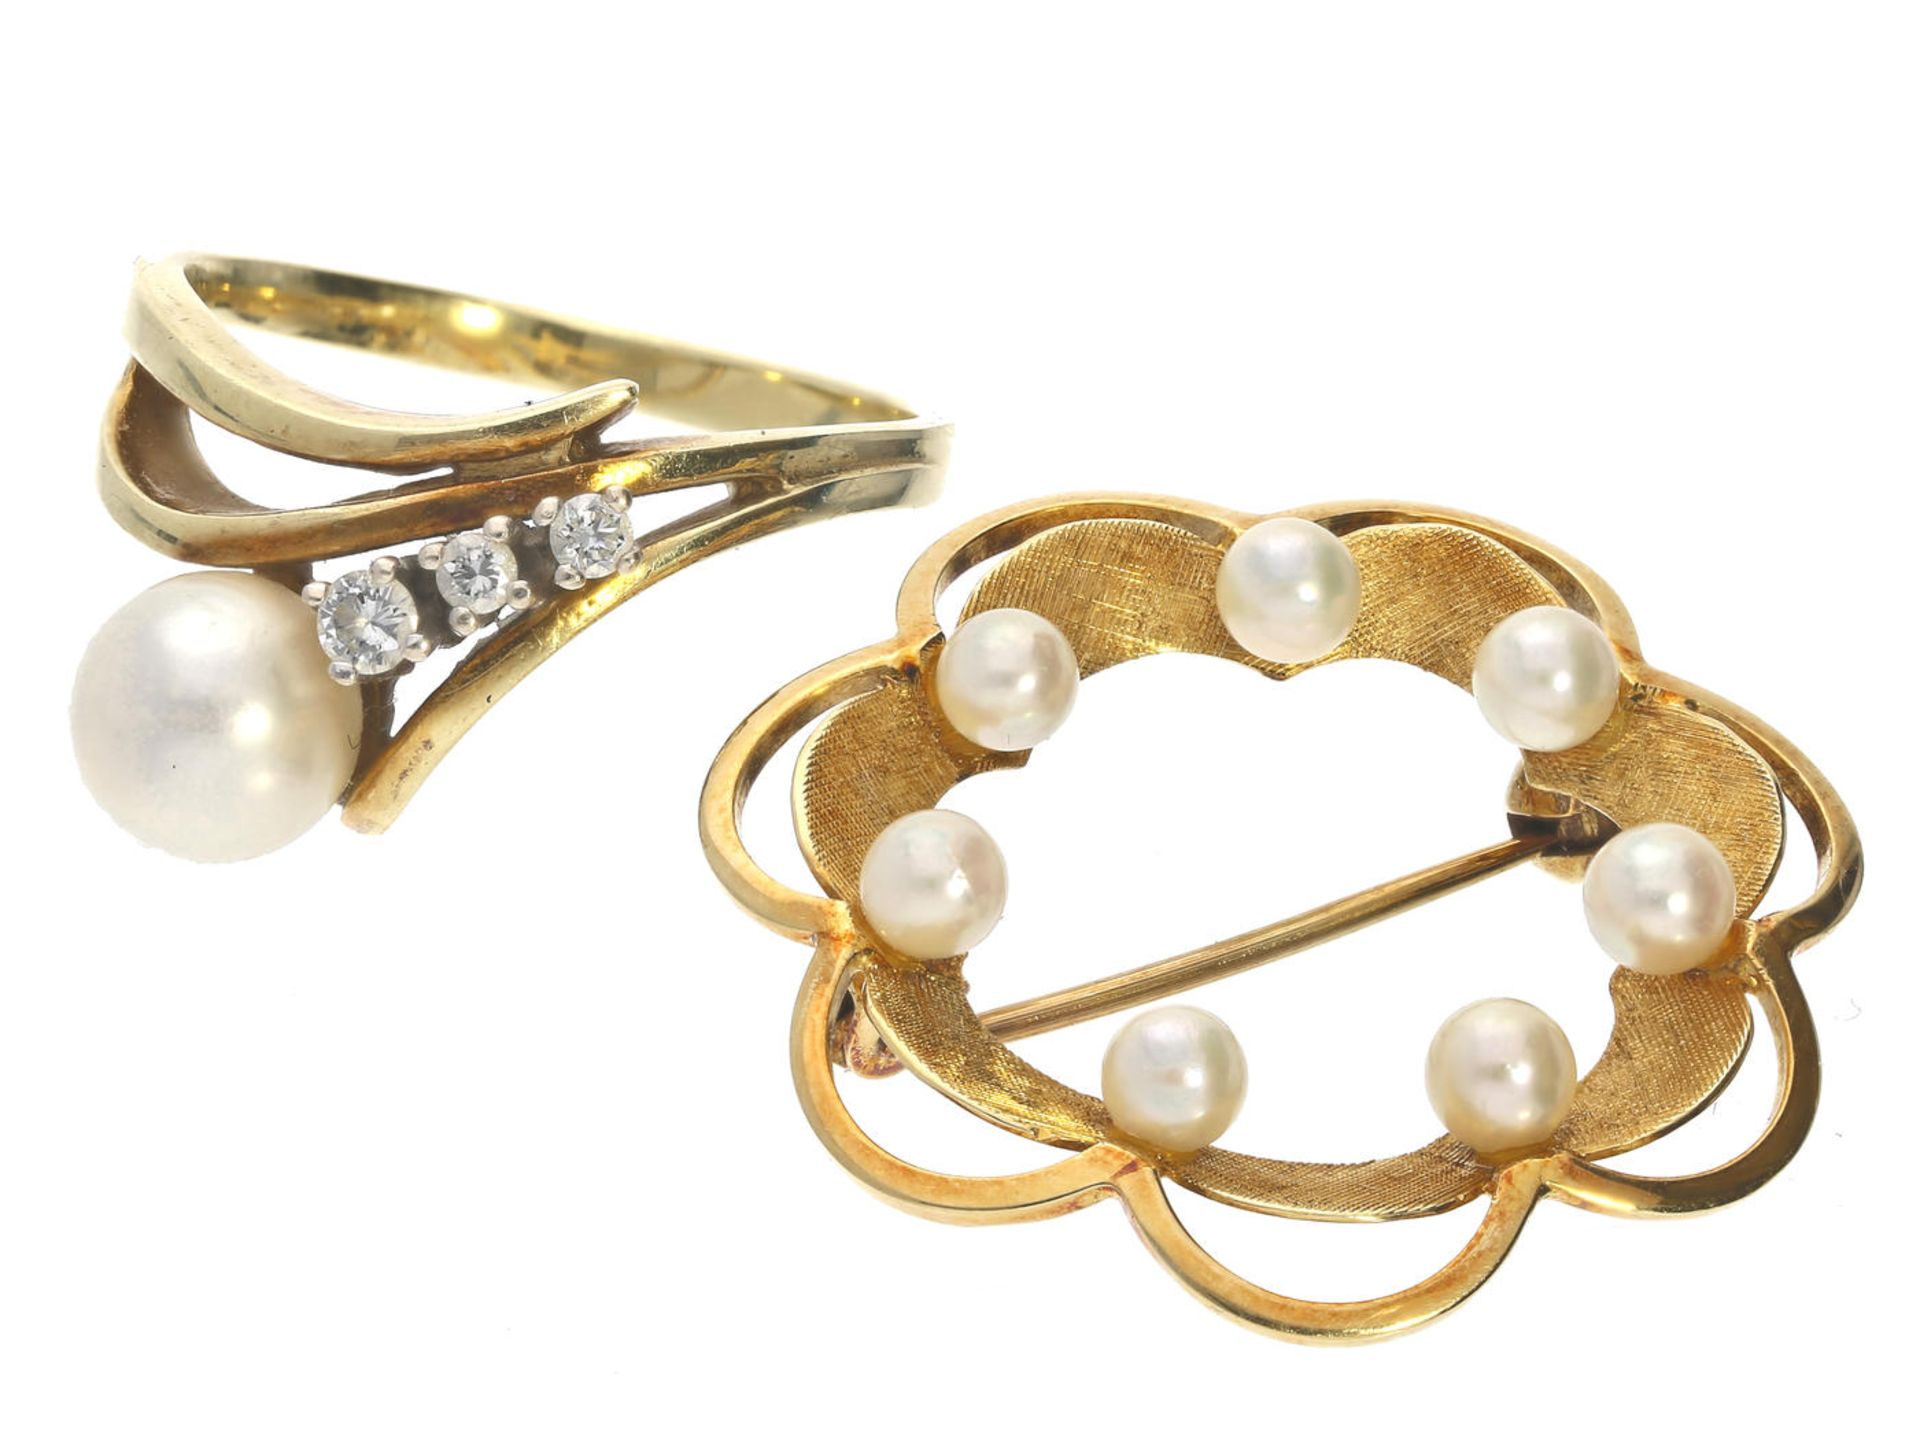 Ring/Brosche: vintage Damenring mit Perle und Brillanten sowie eine Brosche 1. Ring ca. Ø18mm, RG57,